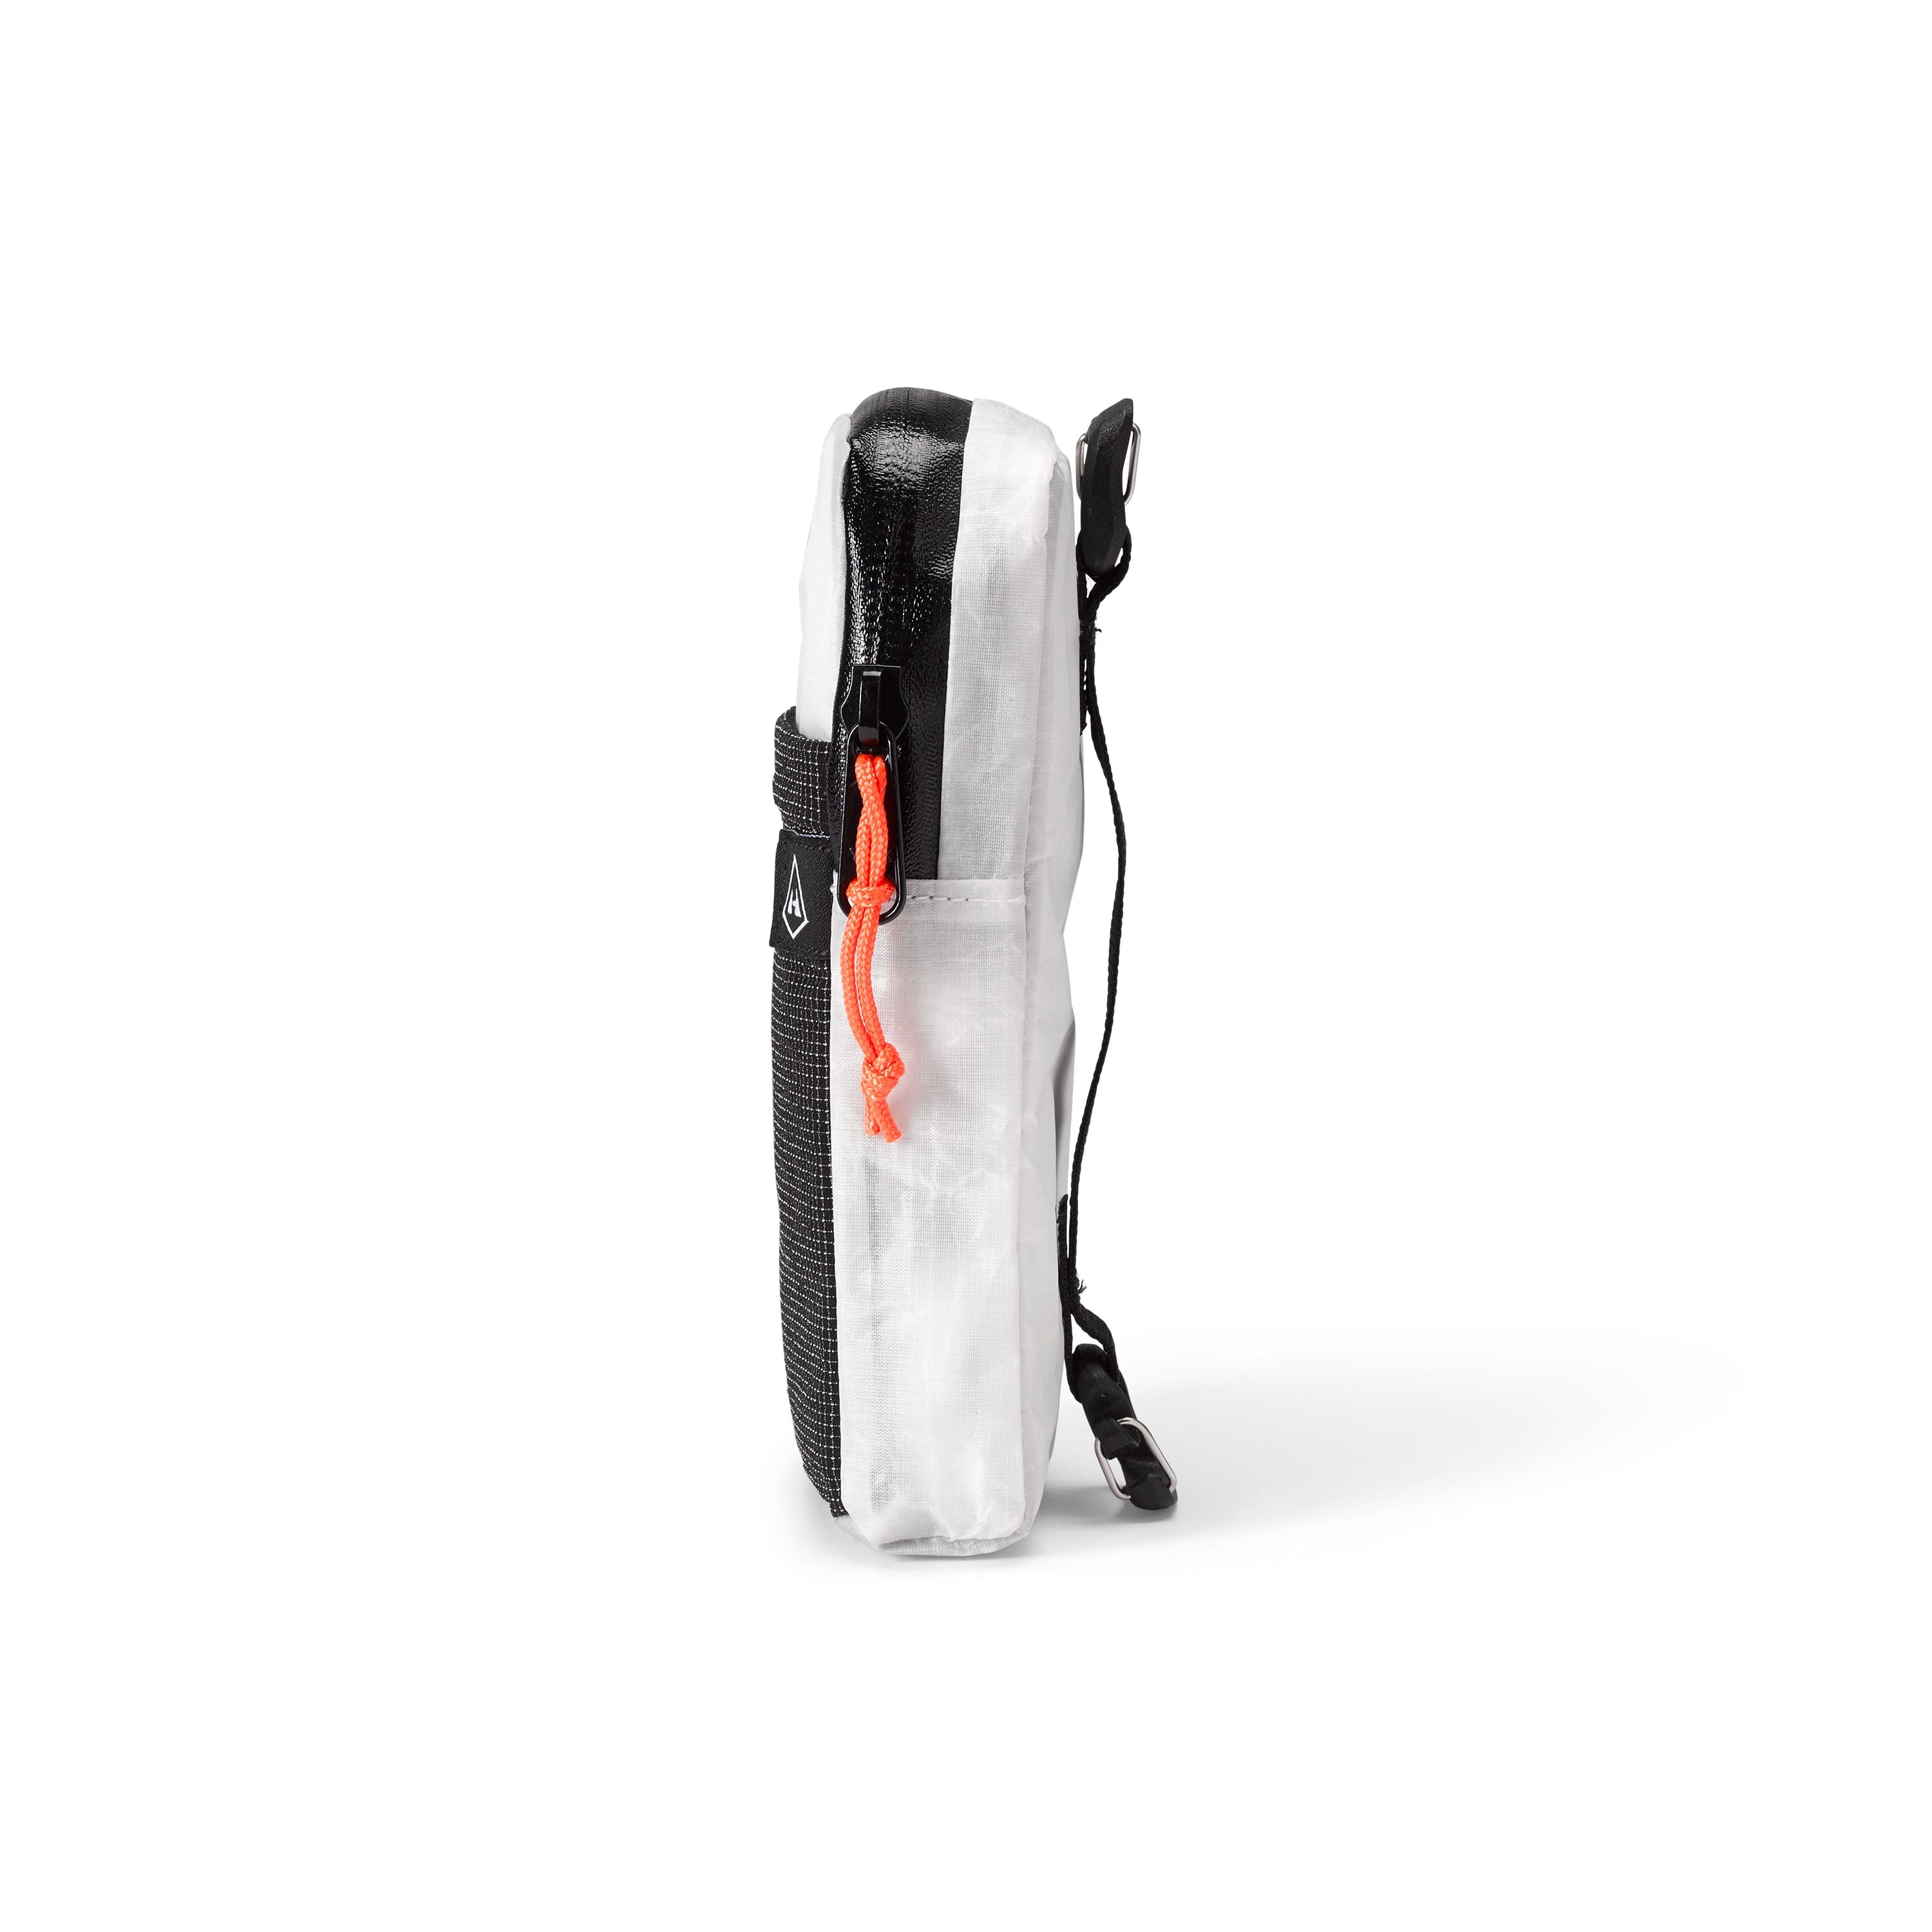 The Hyperlite Mountain Gear Bottle Pocket Backpack Water Bottle